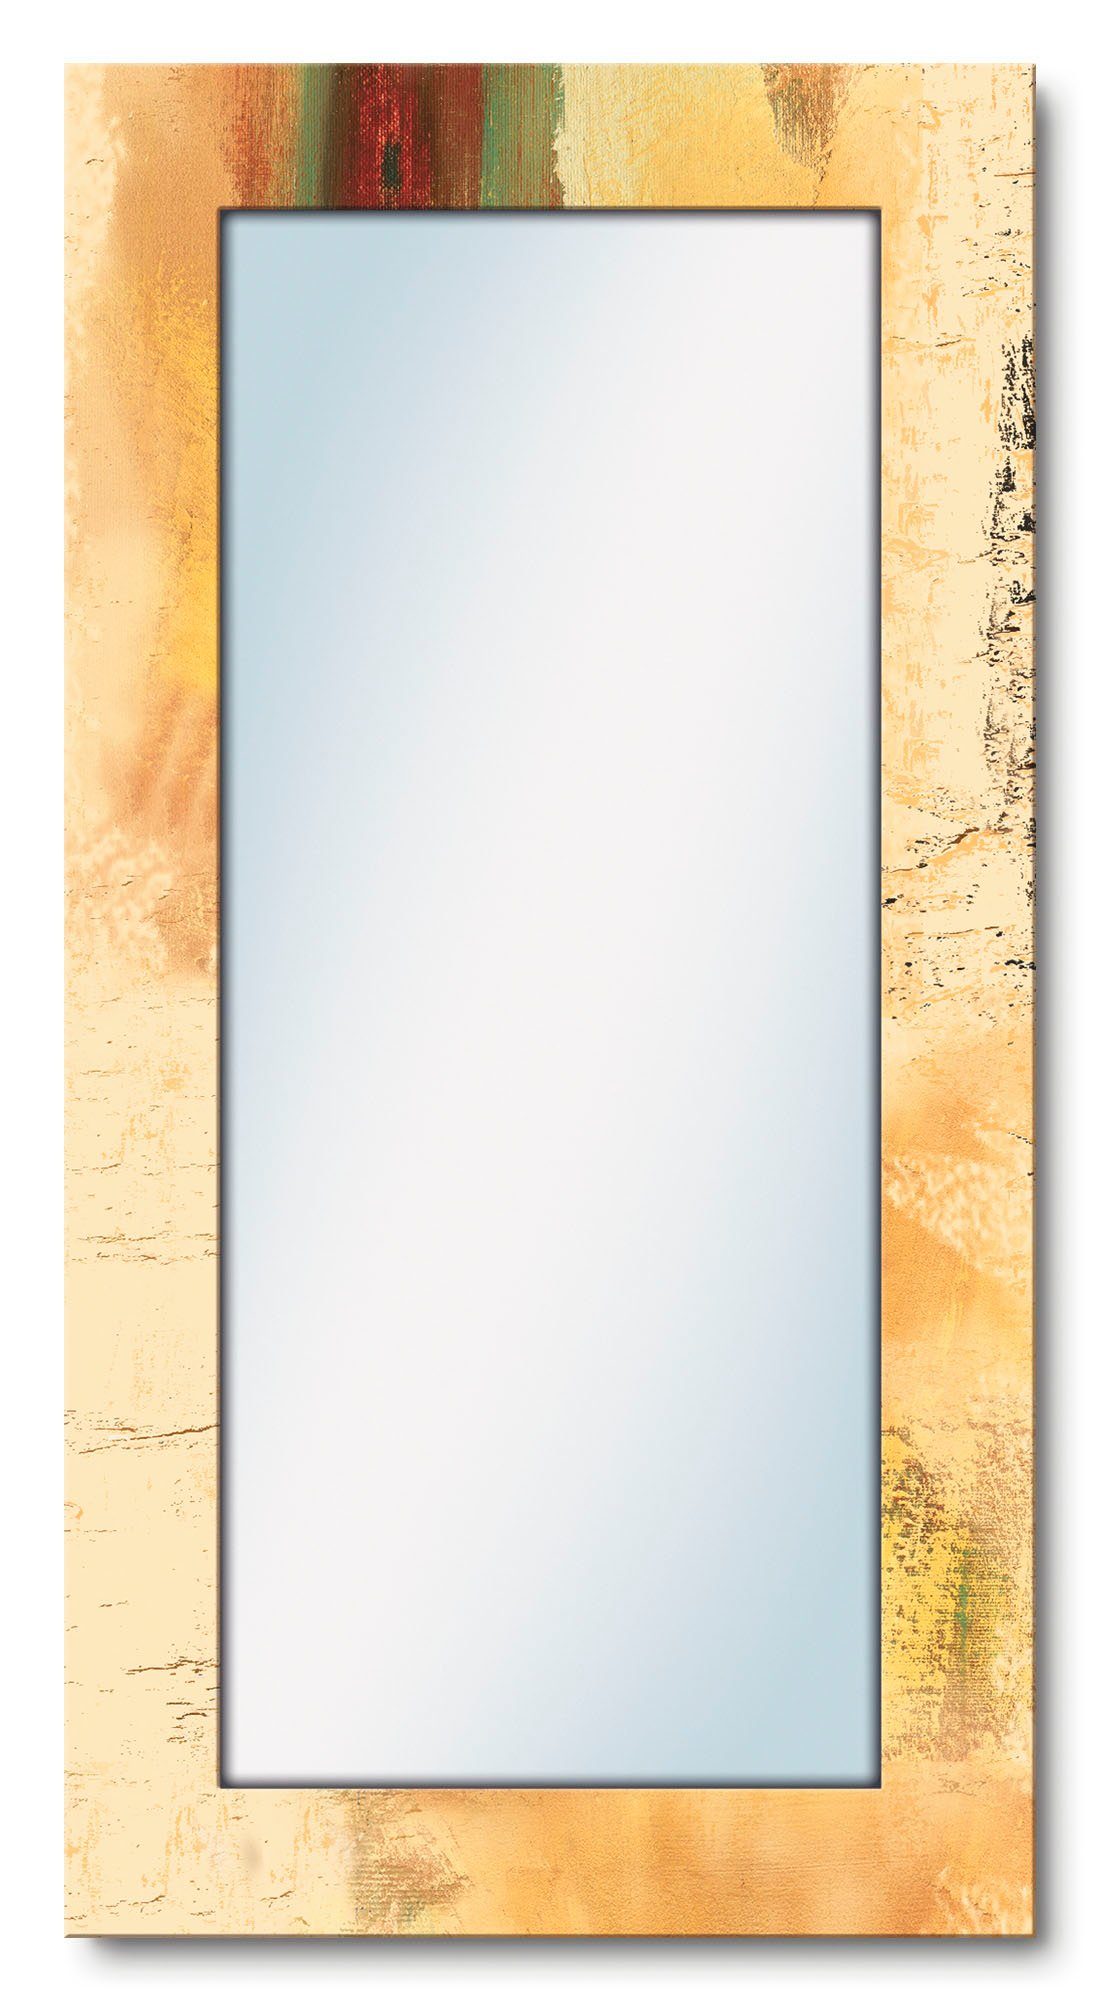 Artland Sierspiegel Welkom in ons huis ingelijste spiegel voor het hele lichaam met motiefrand, geschikt voor kleine, smalle hal, halspiegel, mirror spiegel omrand om op te hangen